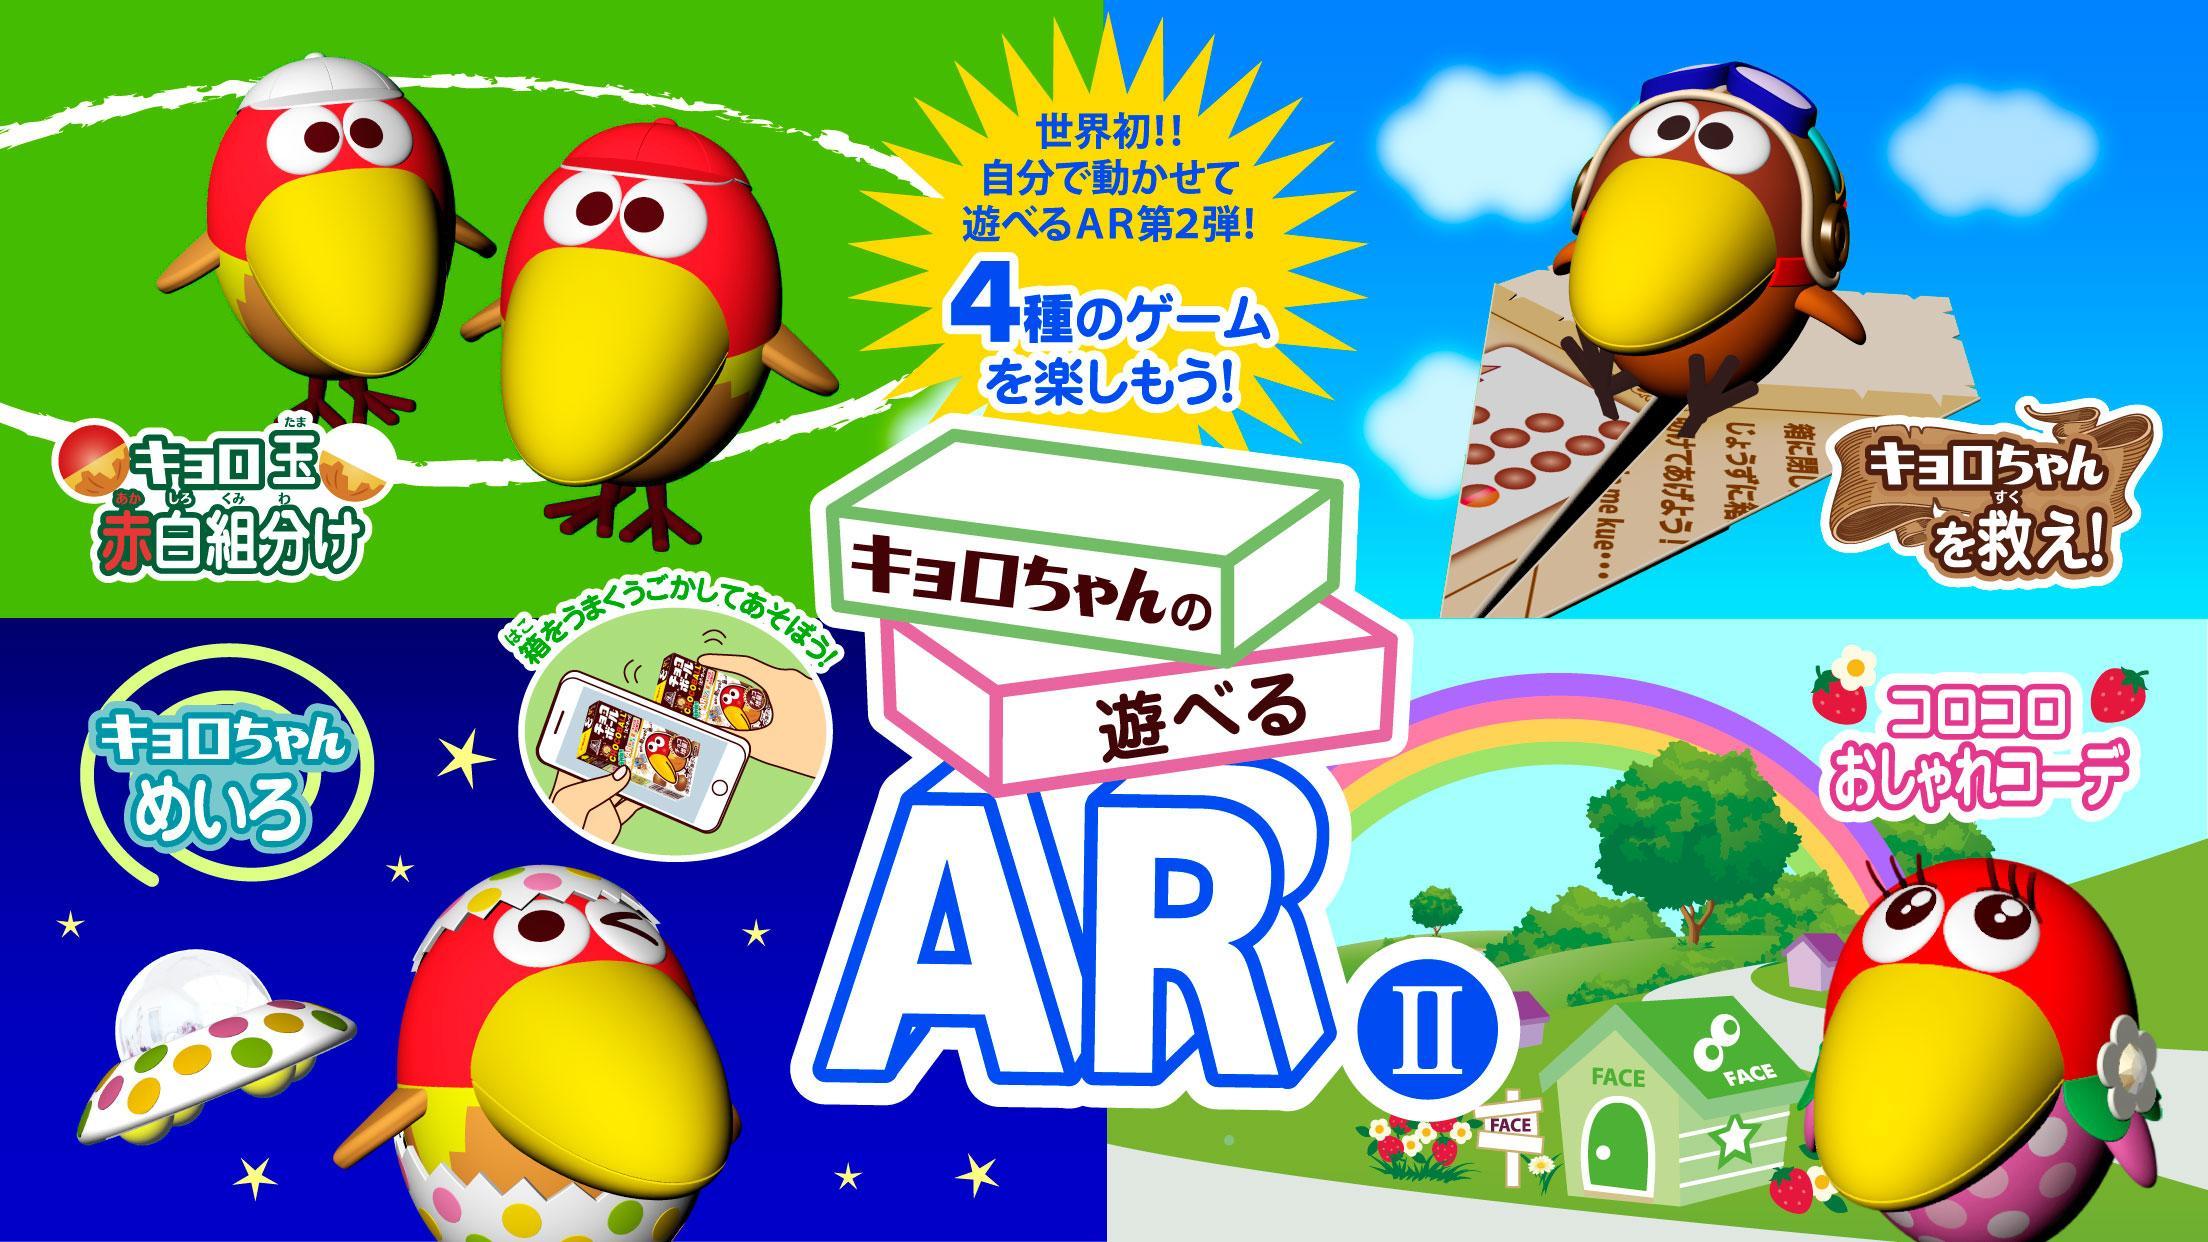 Screenshot 1 of Le jeu AR II Free jouable de Kyoro-chan pour jouer avec une boîte de boules de chocolat 1.2